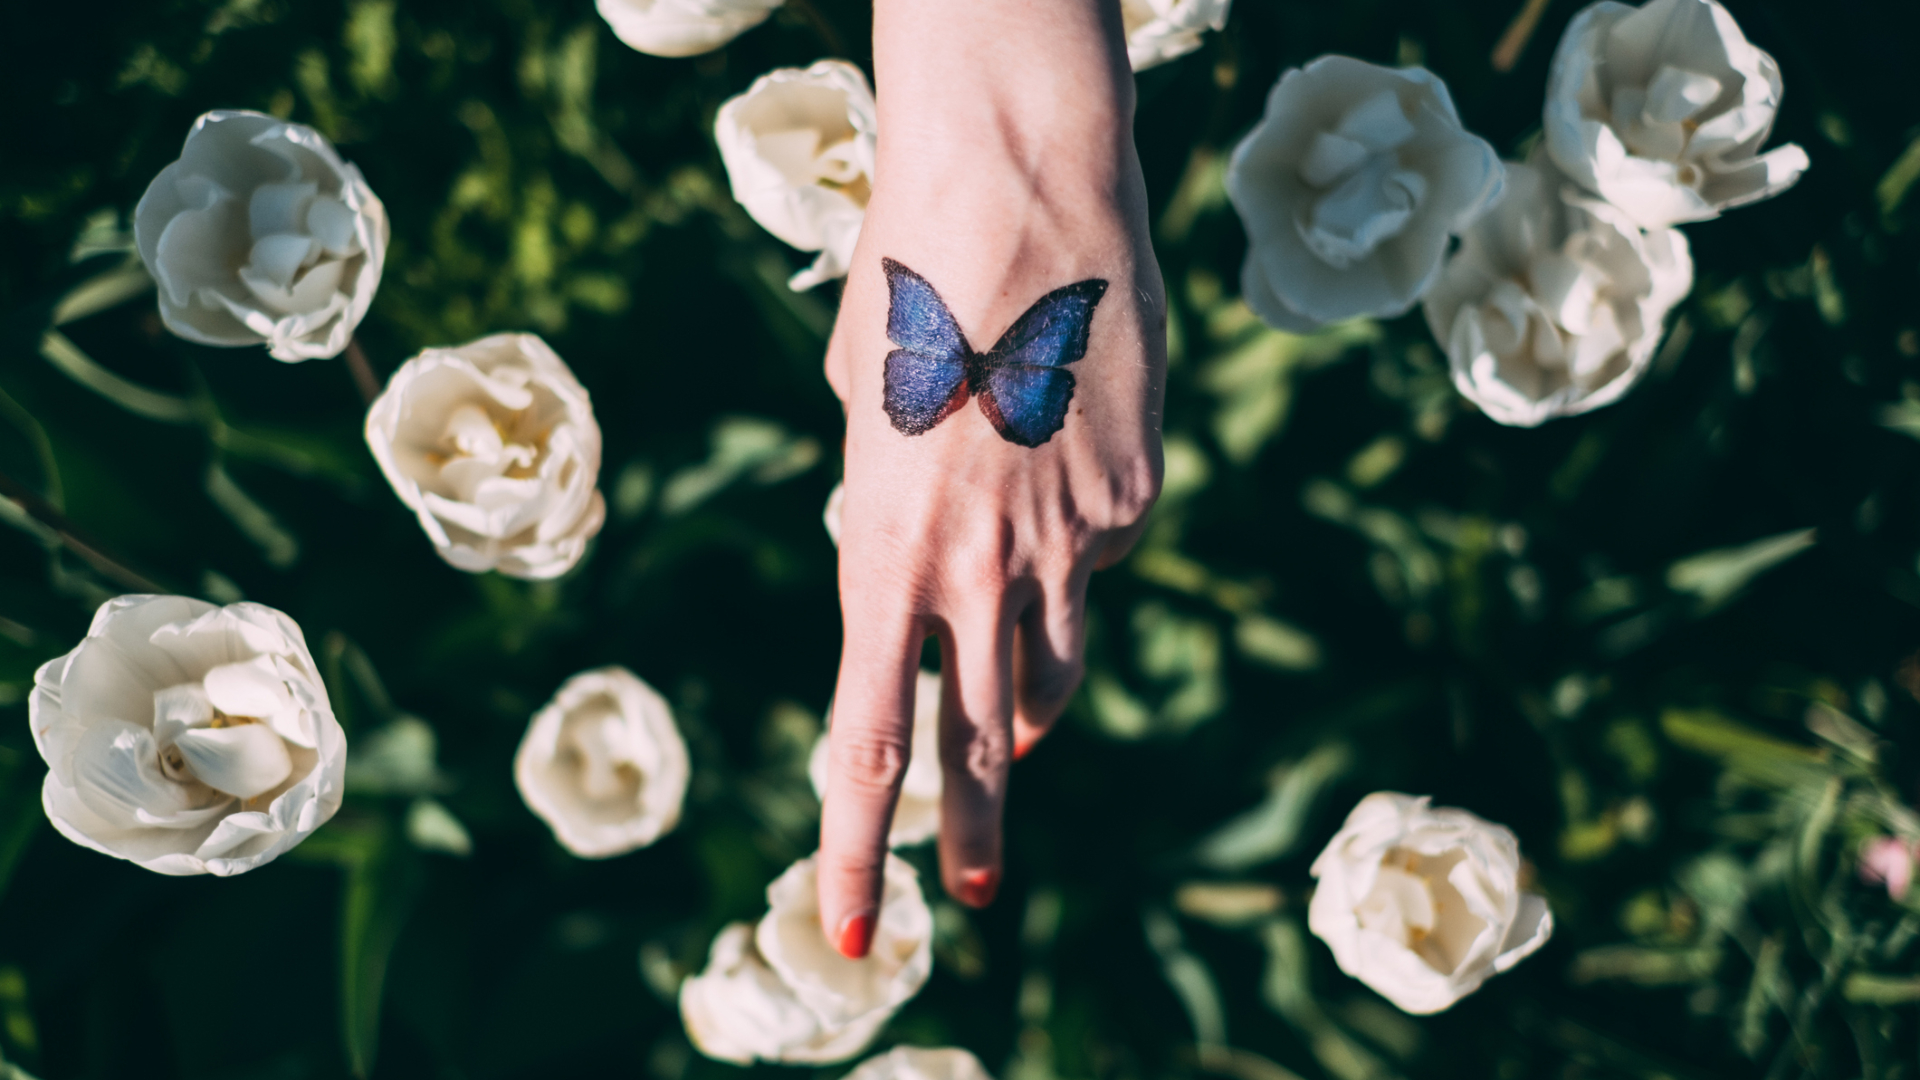 El verdadero significado del tatuaje de la flor de loto